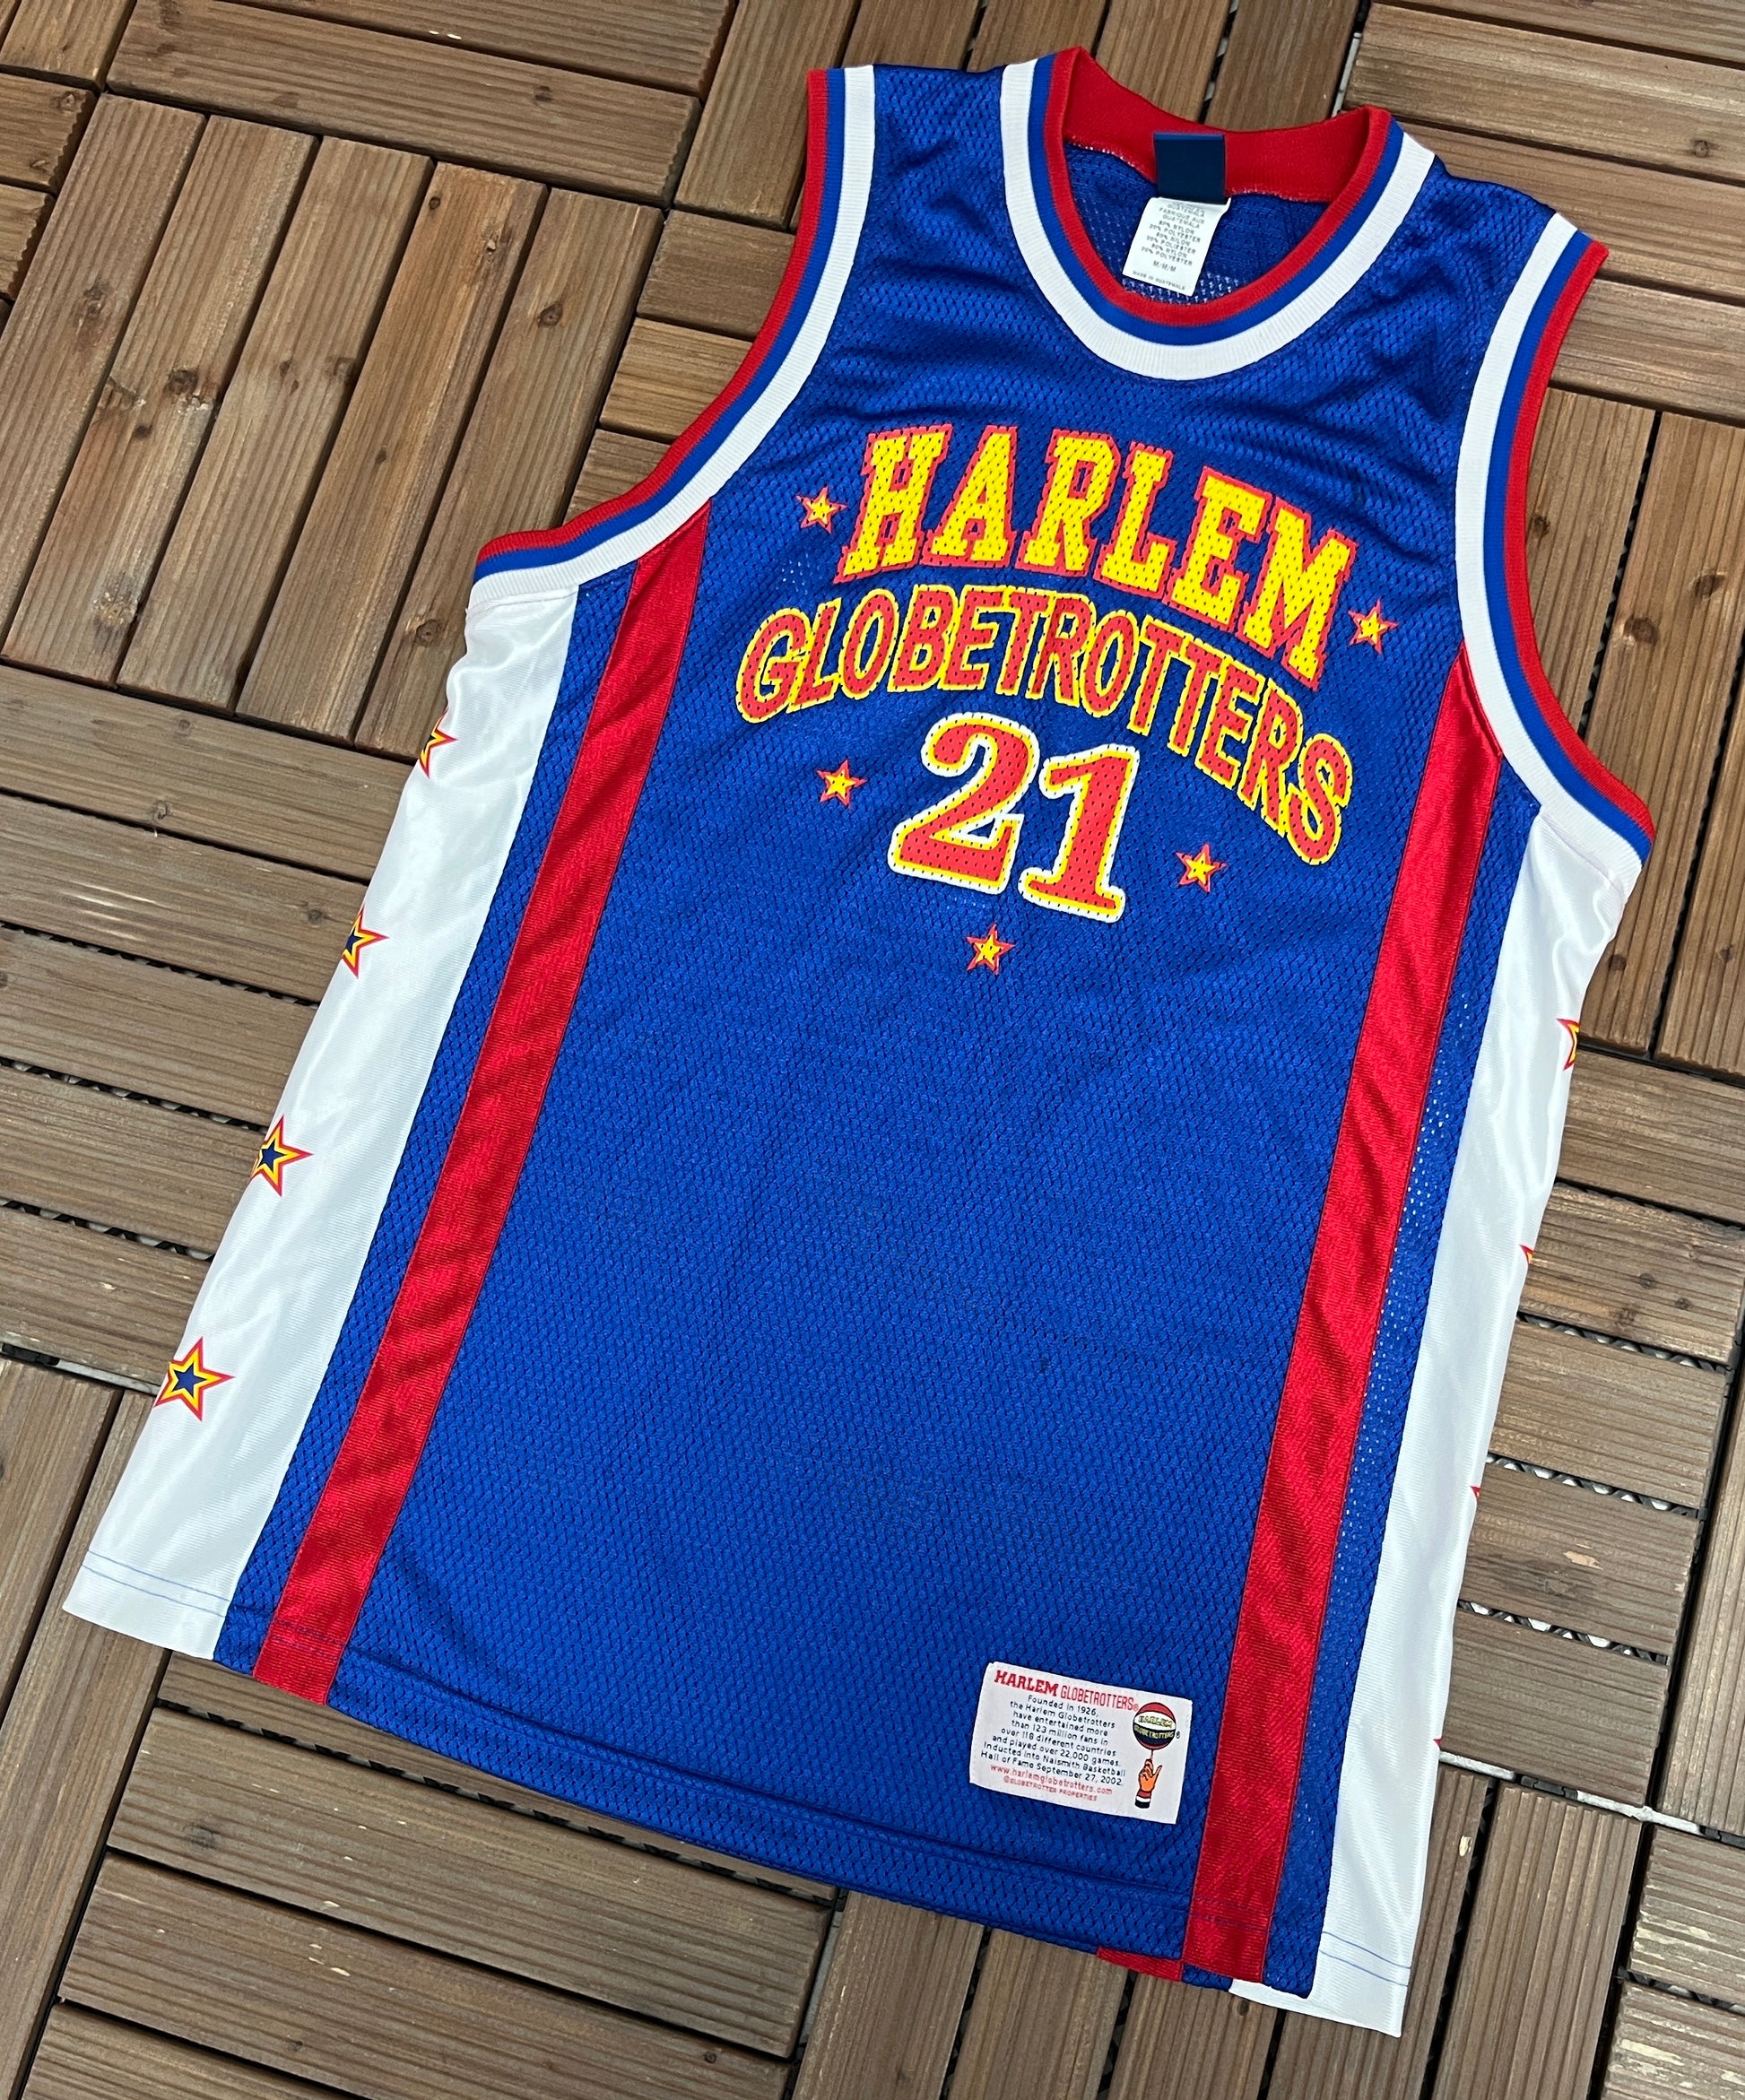 Harlem Globetrotters jersey.